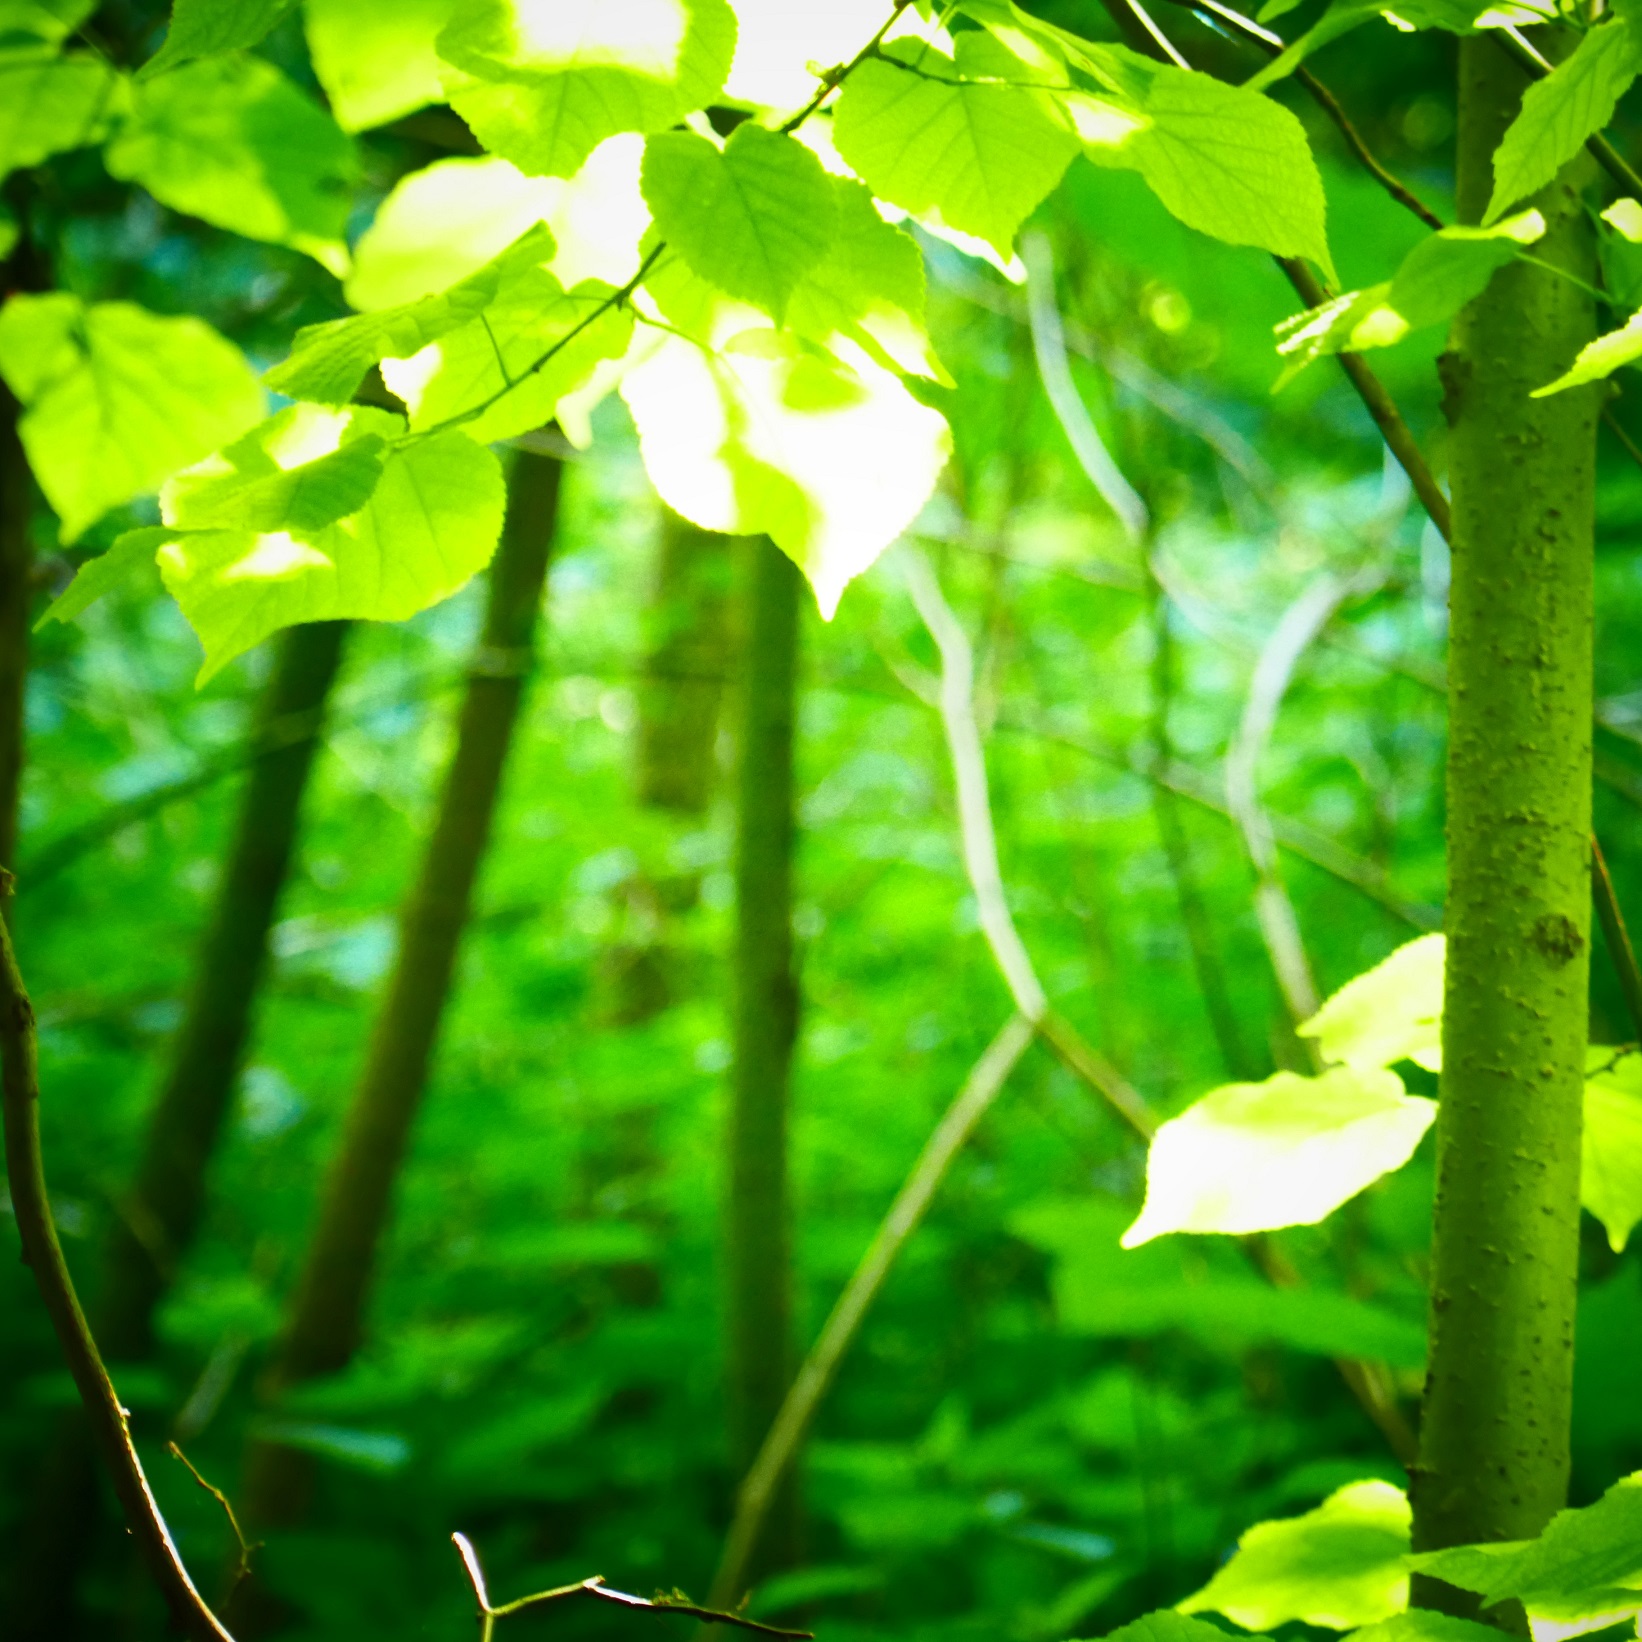 Ochrana, obnova a zmlazení lesů zvláště na svazích-image